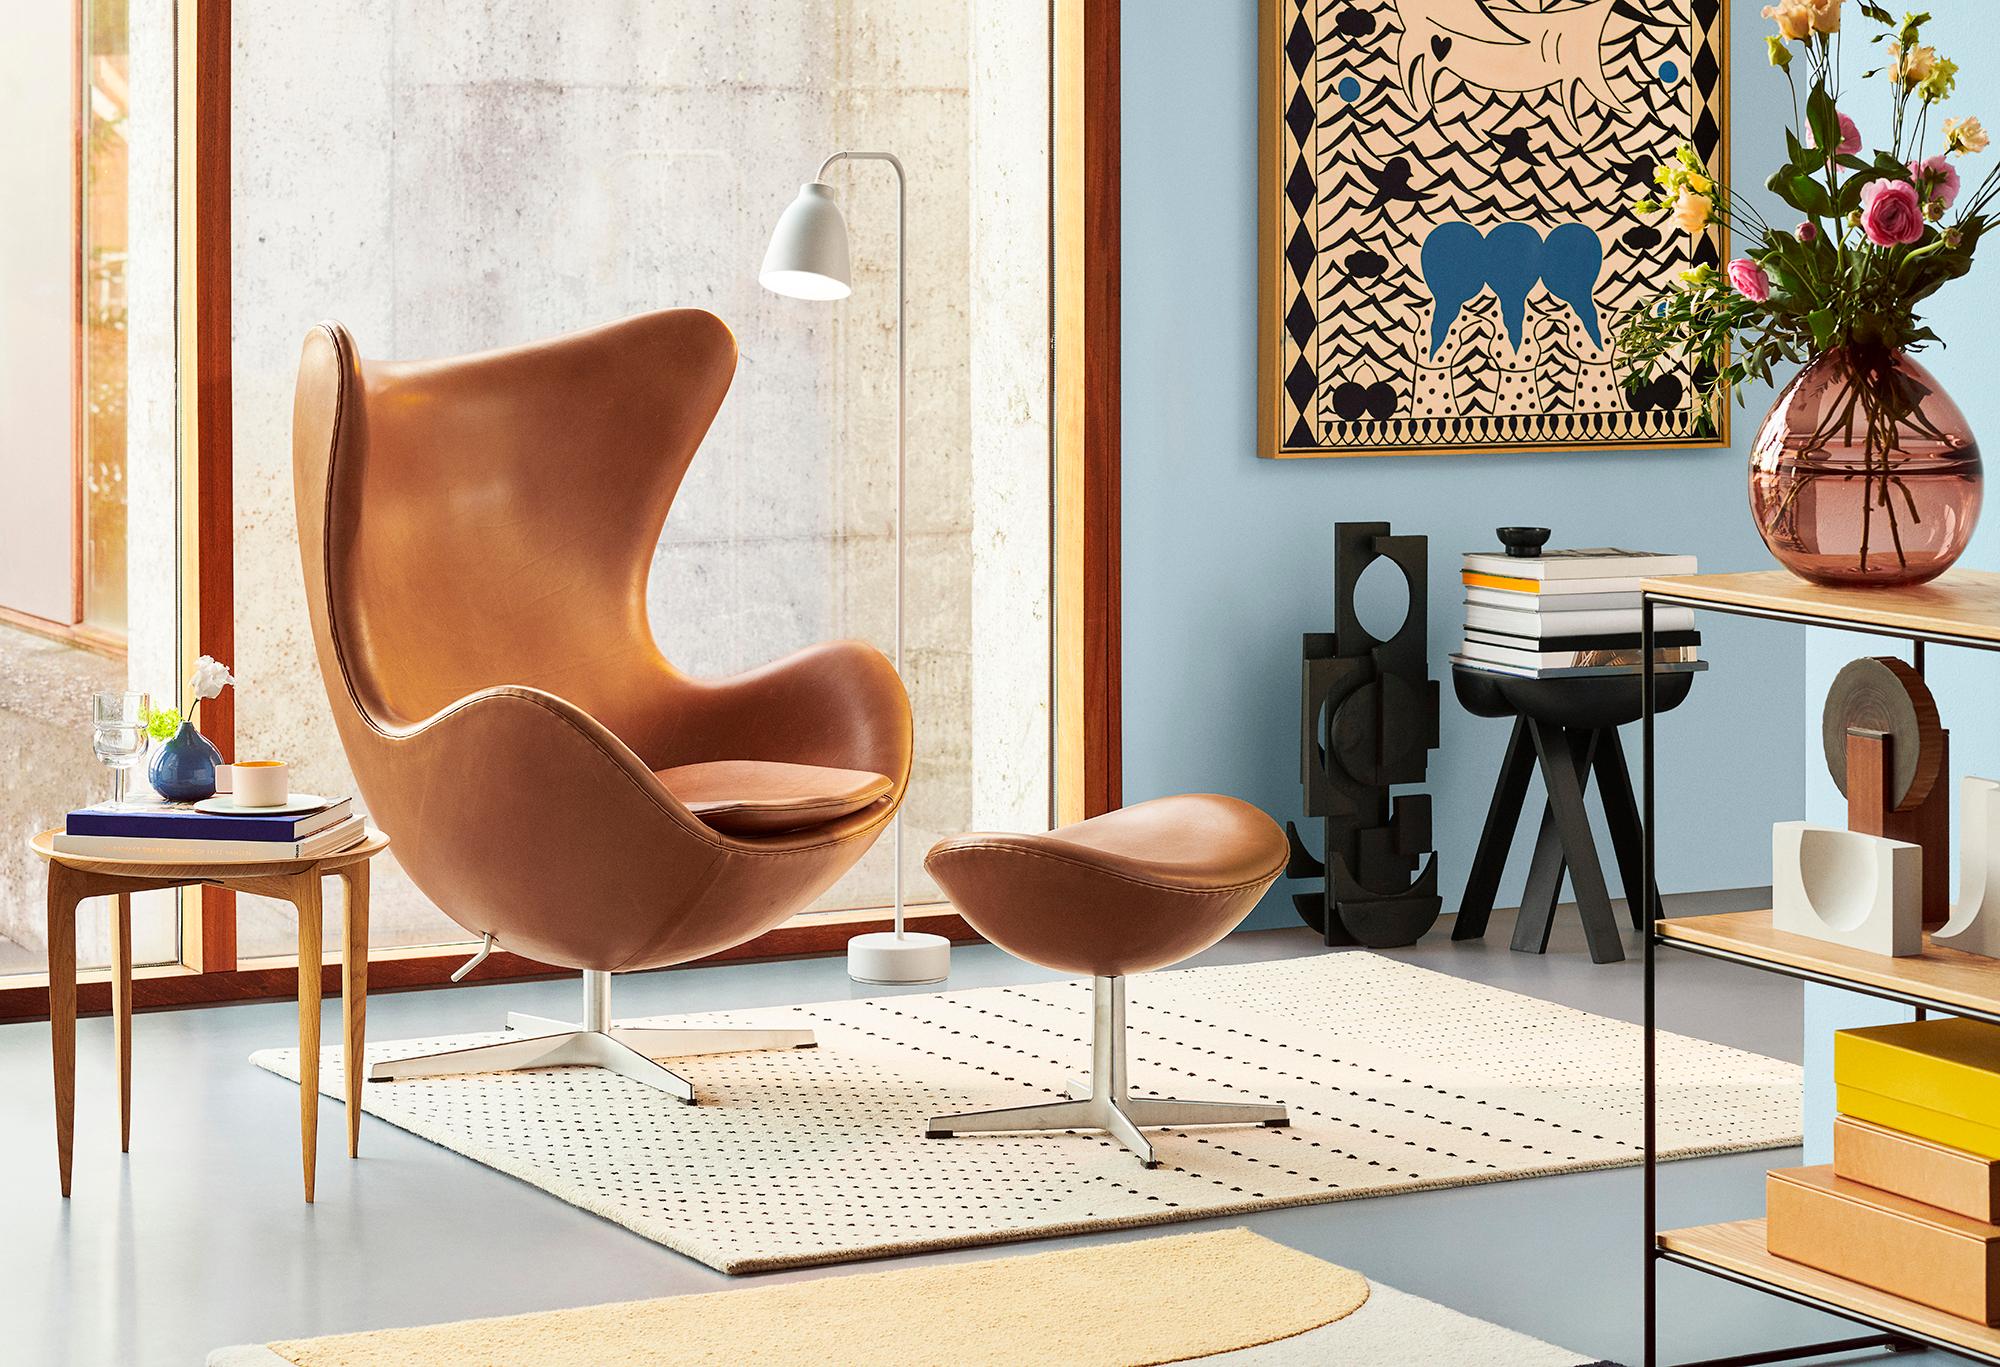 Arne Jacobsen 'Egg' Stuhl für Fritz Hansen in Lederpolsterung (Kat. 5).

Fritz Hansen wurde 1872 gegründet und ist zum Synonym für legendäres dänisches Design geworden. Die Marke kombiniert zeitlose Handwerkskunst mit einem Schwerpunkt auf